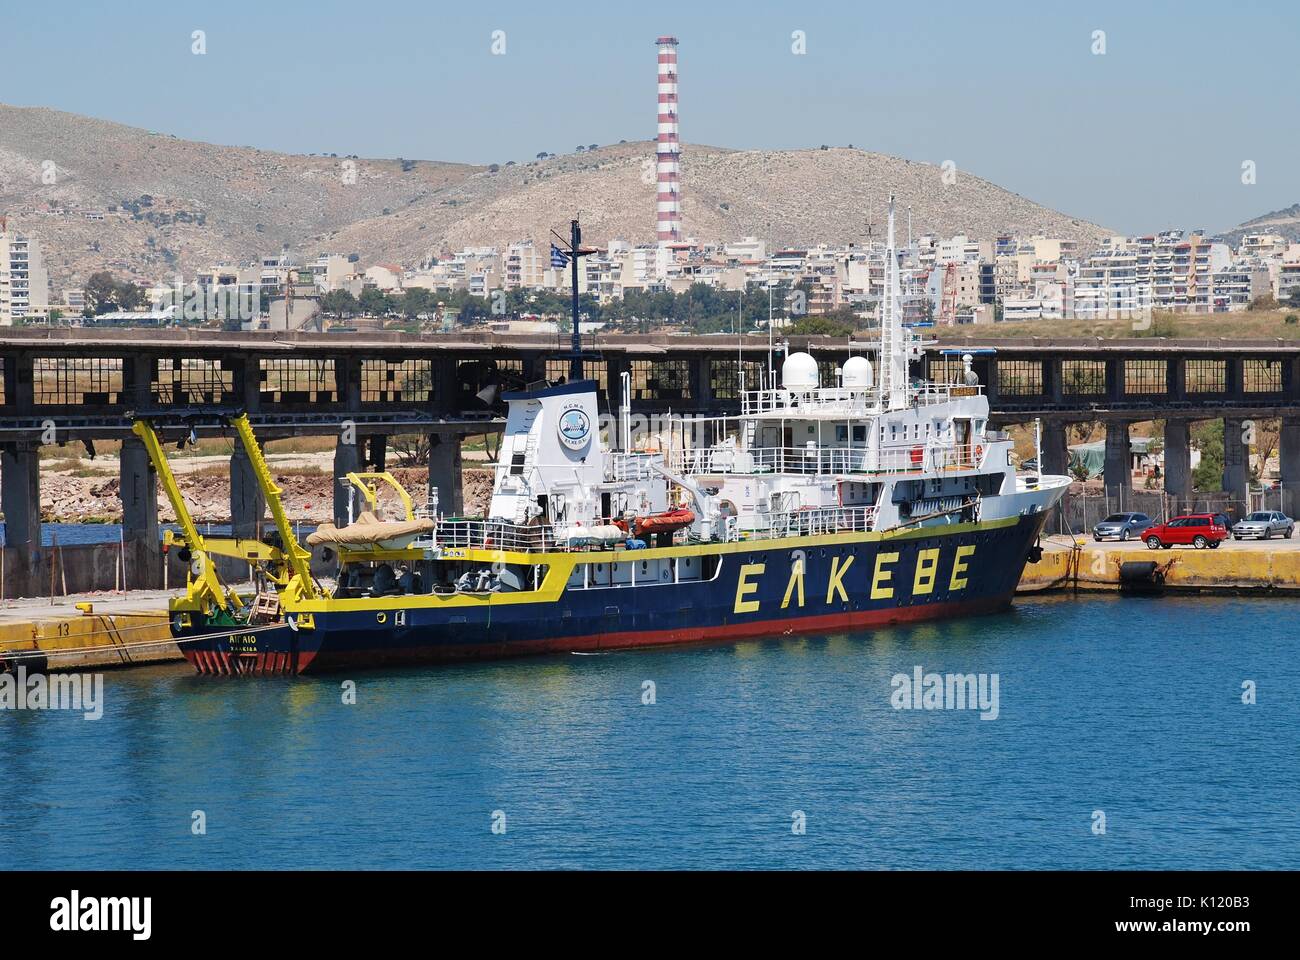 Aegaeo, navire de recherche marine de l'Institut d'Océanographie (partie de la Hellenic Centre for Marine Research), amarré dans le port du Pirée, à Athènes. Banque D'Images